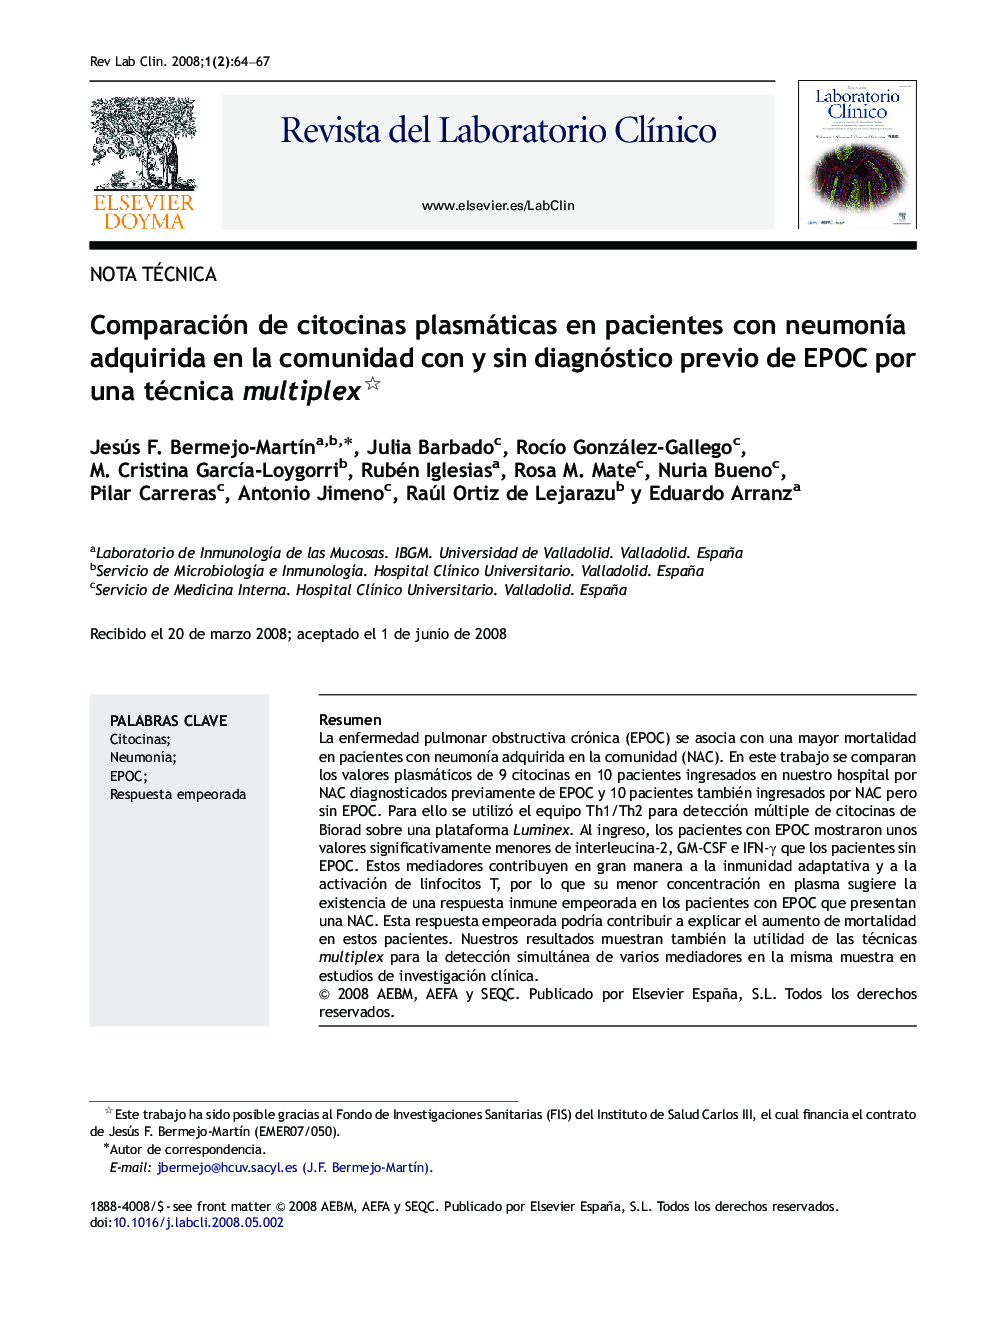 Comparación de citocinas plasmáticas en pacientes con neumonÃ­a adquirida en la comunidad con y sin diagnóstico previo de EPOC por una técnica multiplex